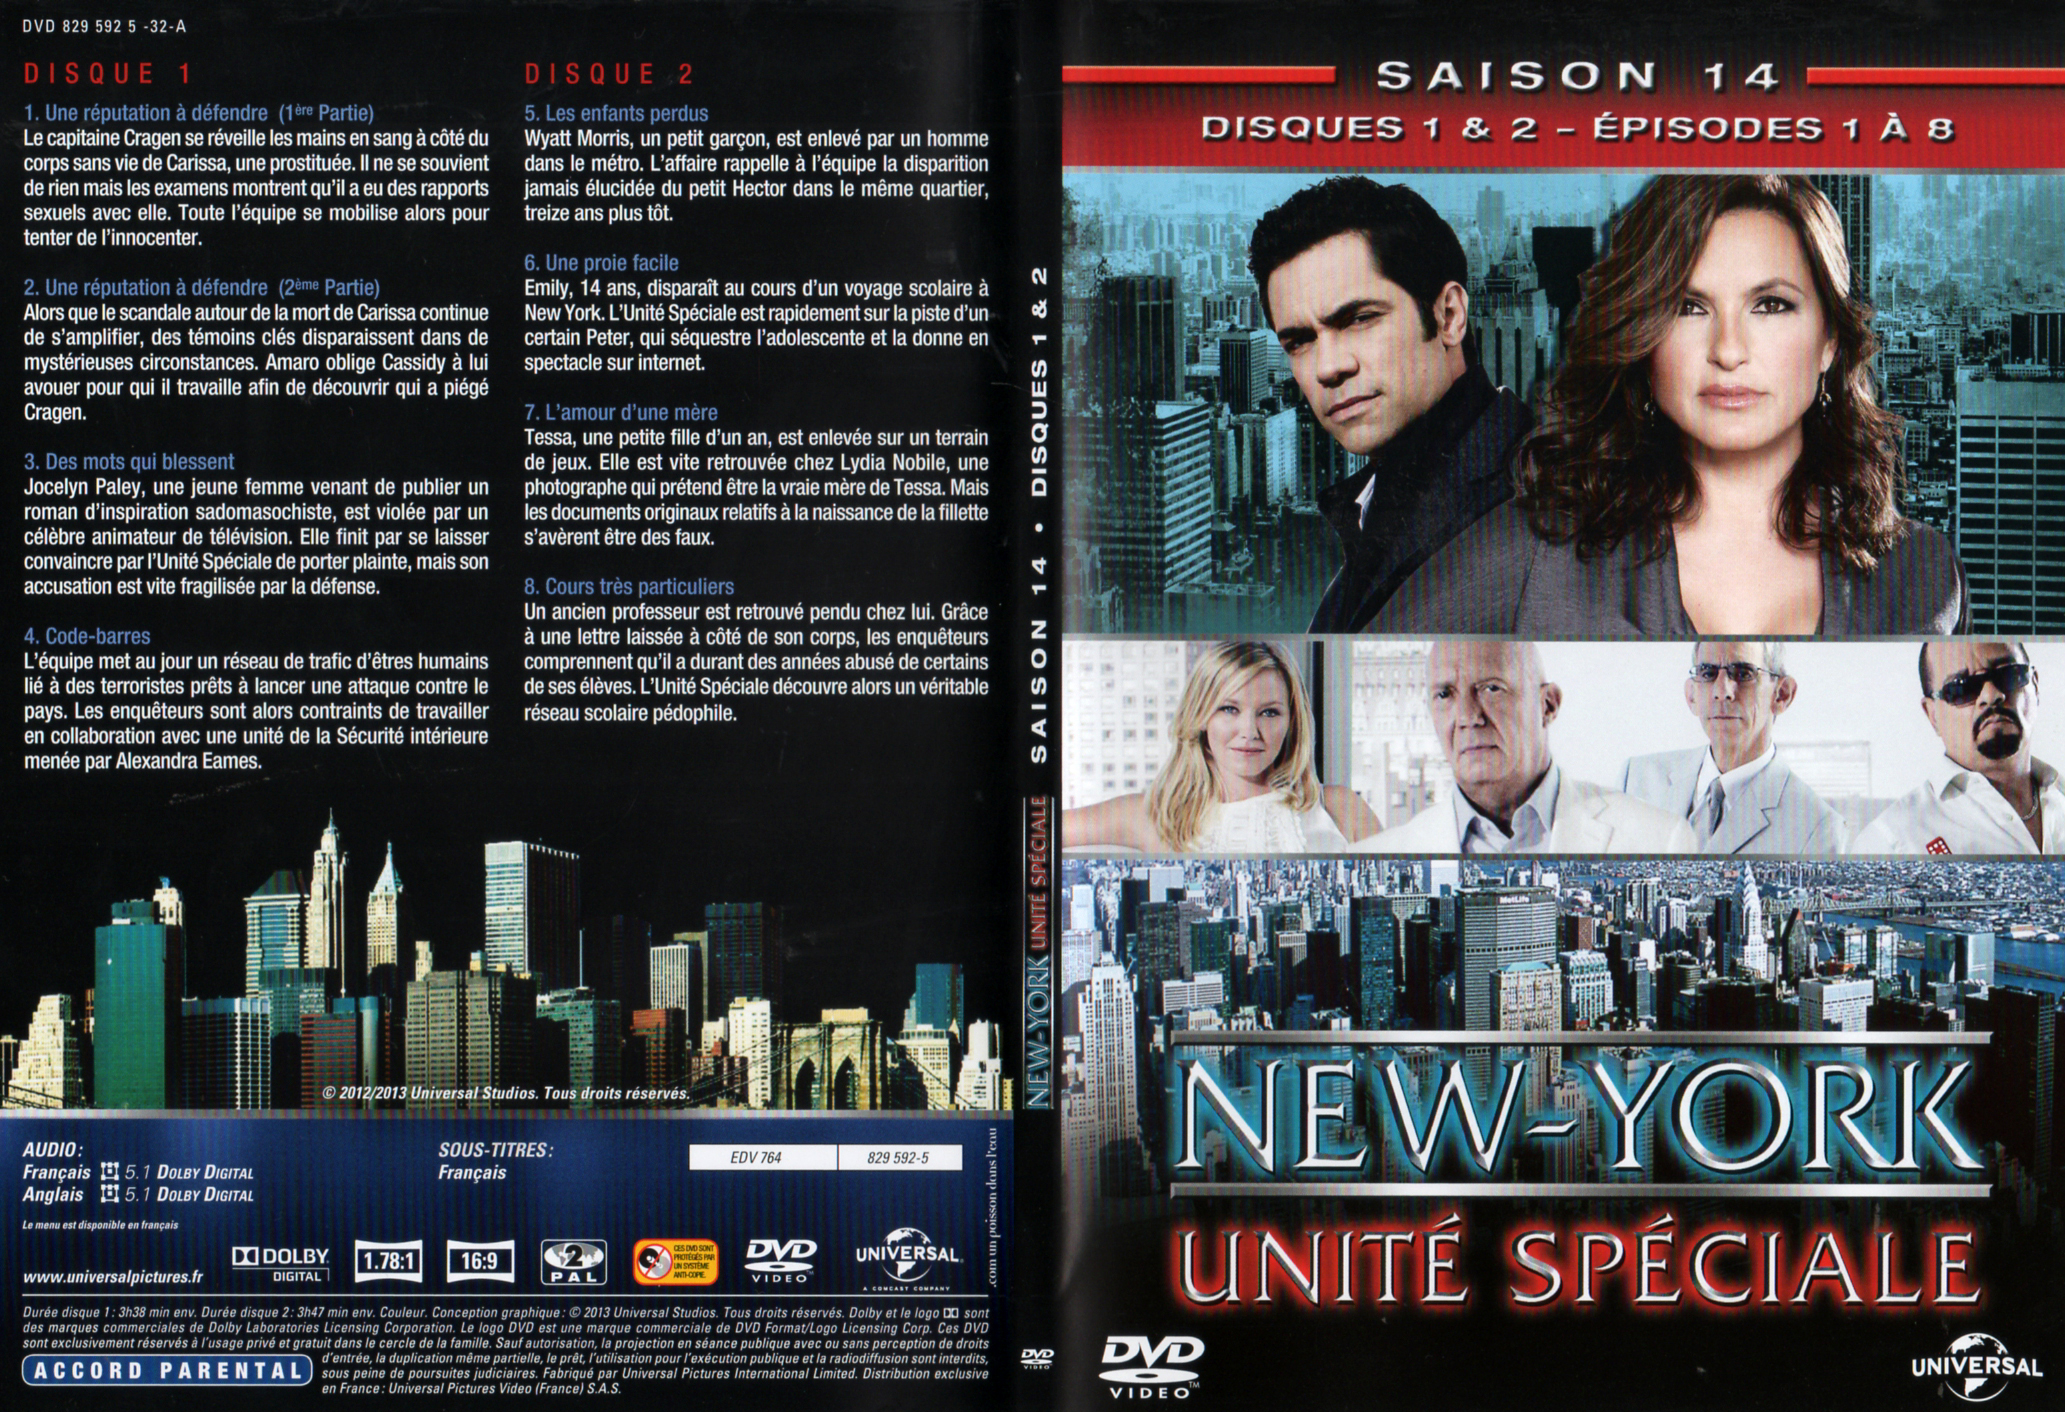 Jaquette DVD New York unit spciale saison 14 DVD 1